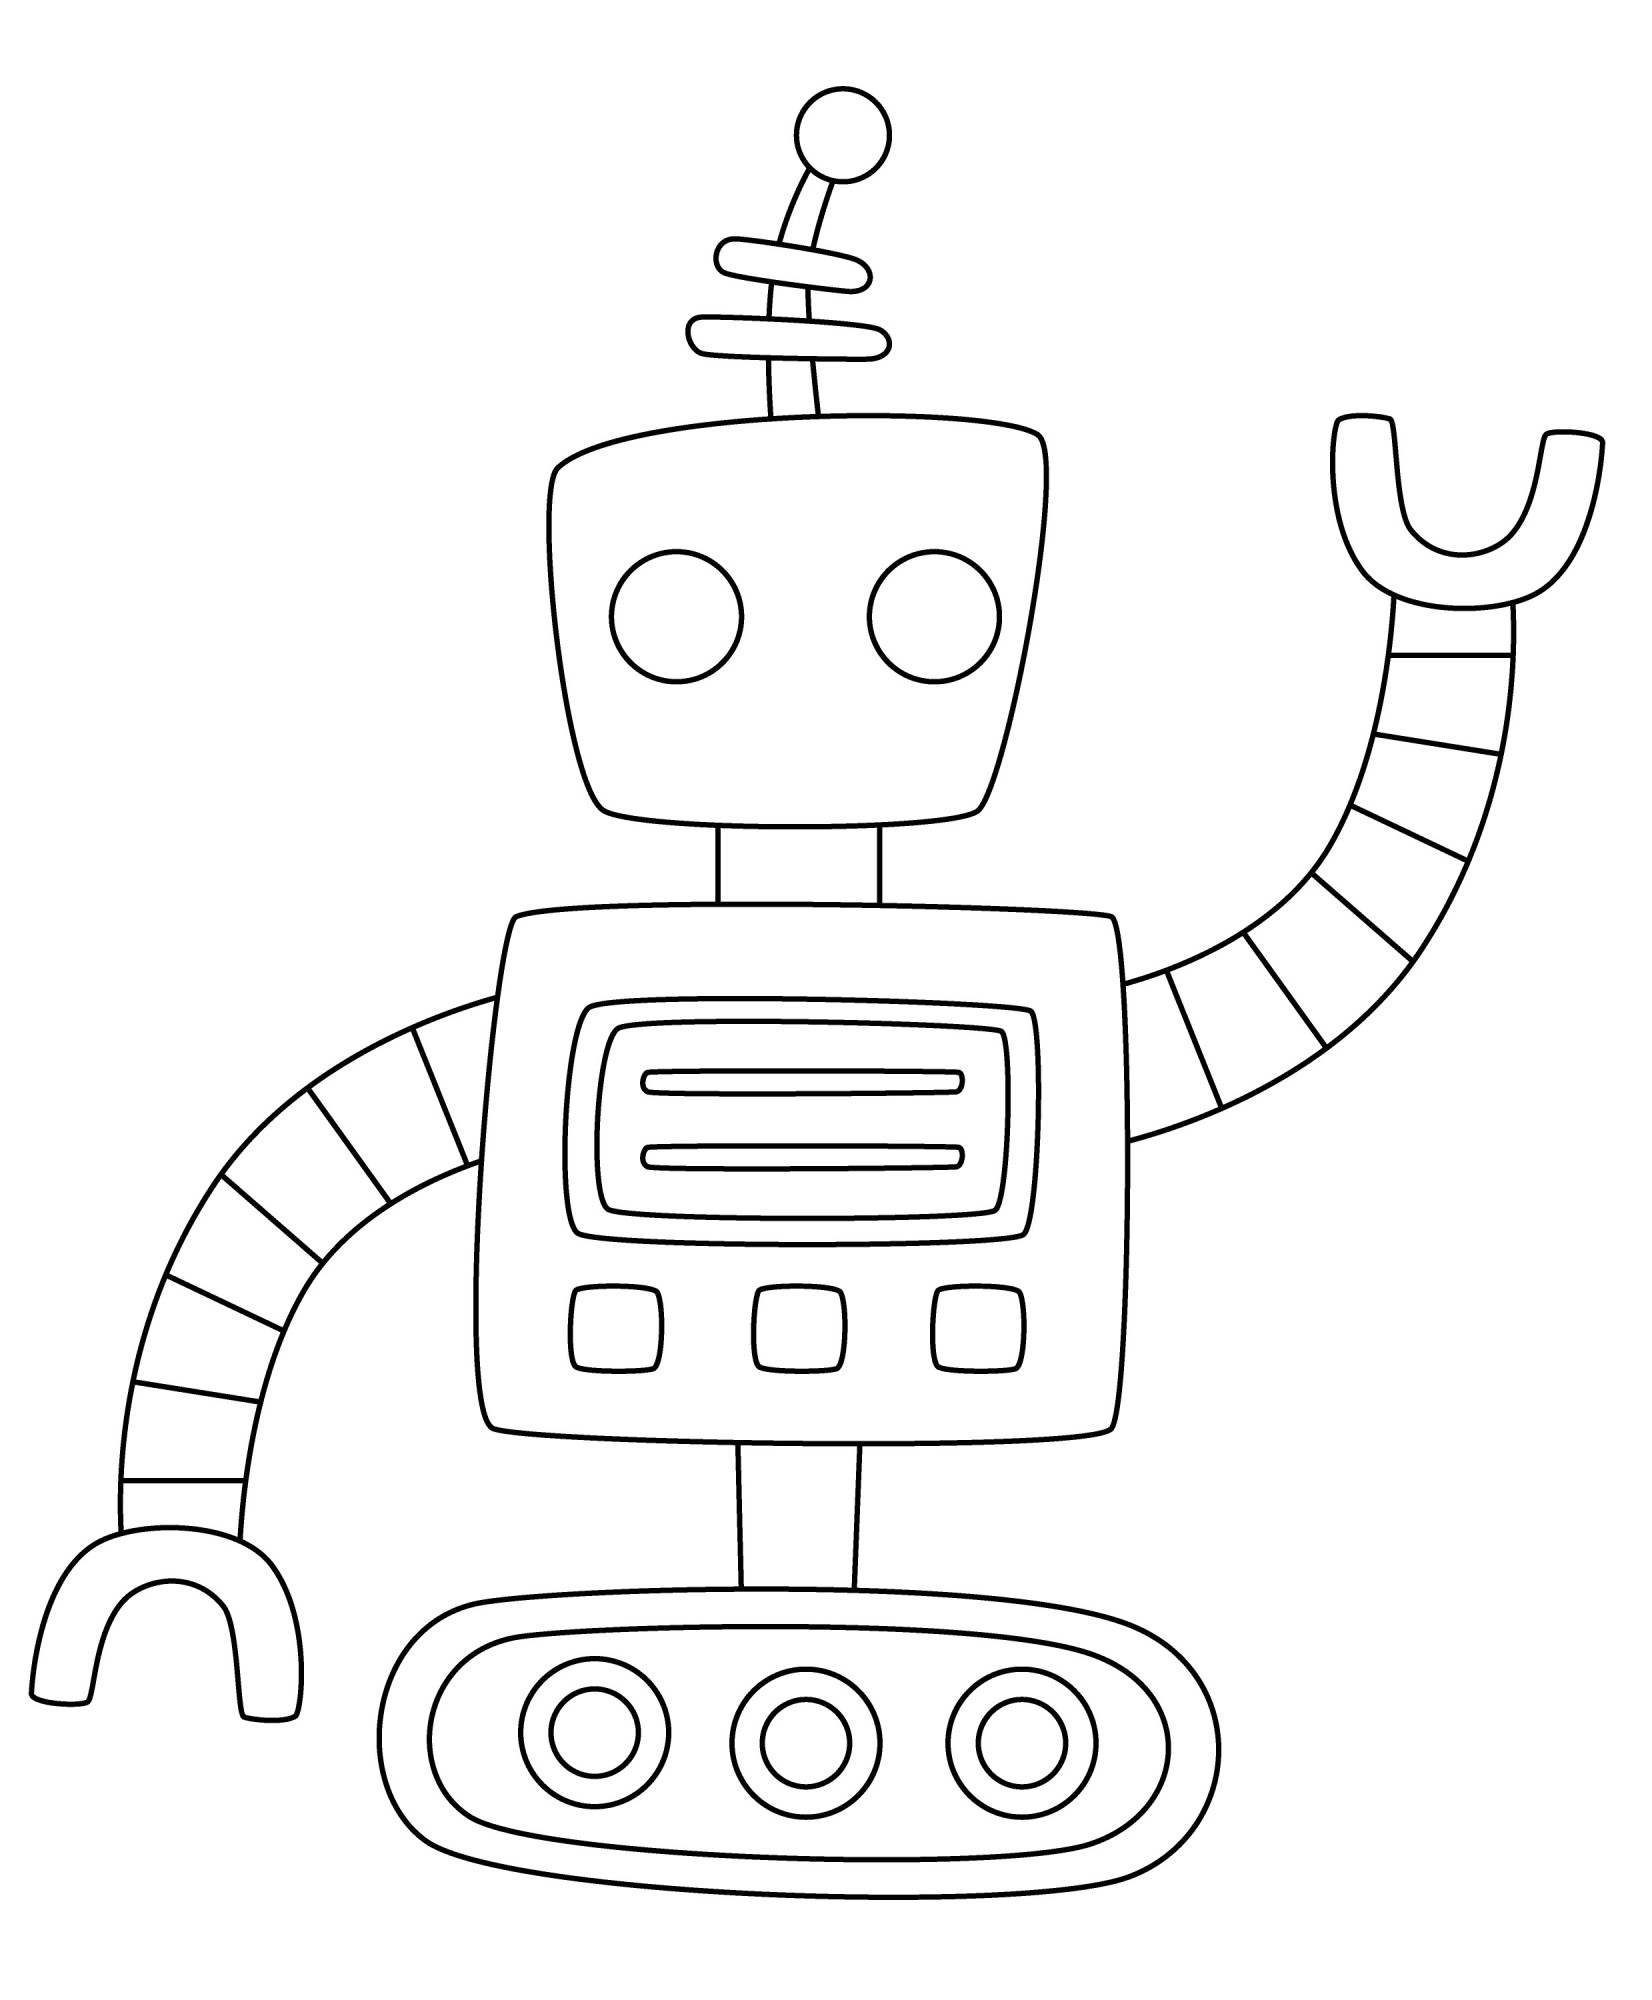 Раскраска для детей: гусеничный робот танк с антенной